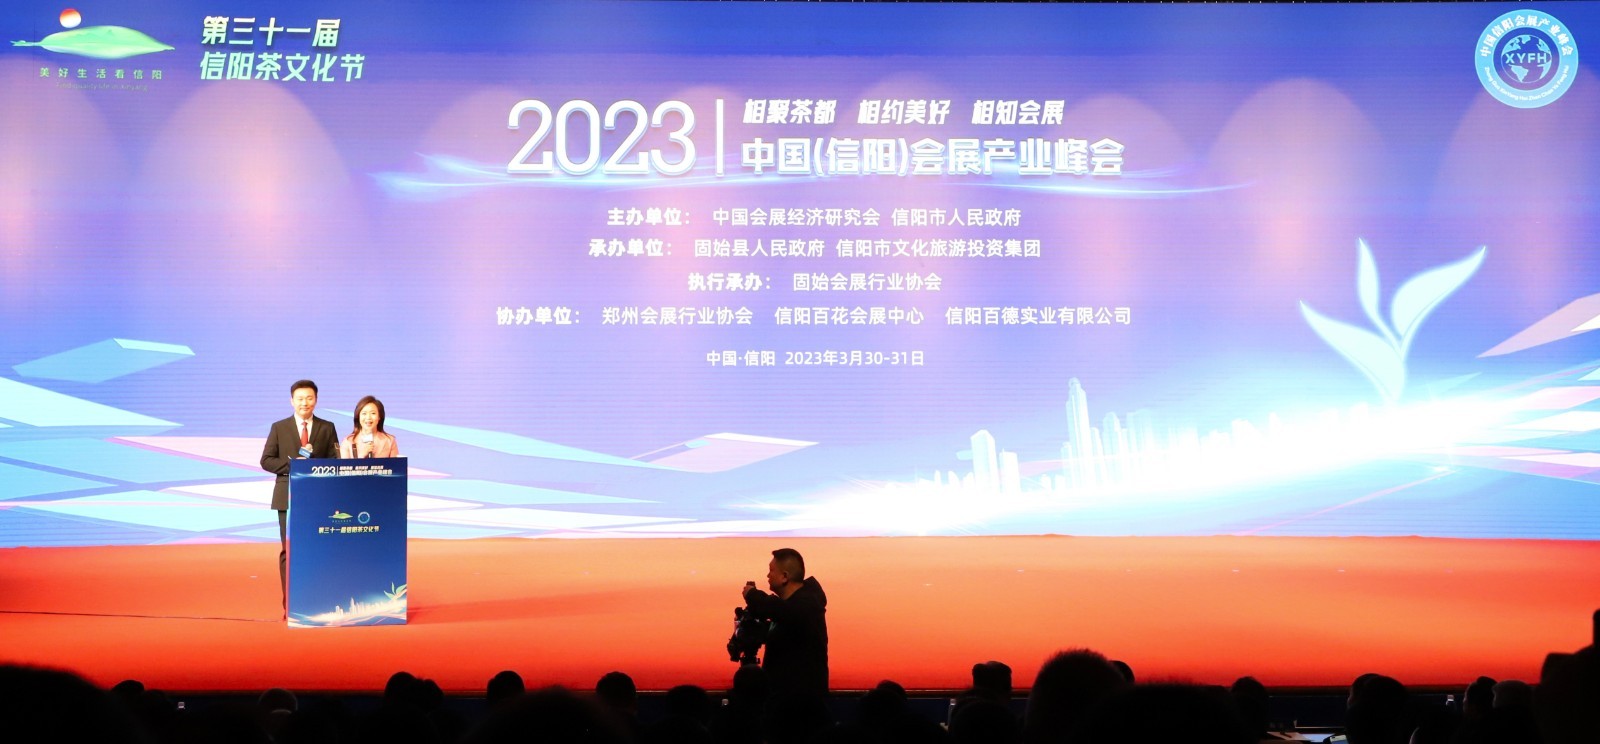 相聚茶都 相约美好 相知会展——2023中国（信阳）会展产业峰会开幕